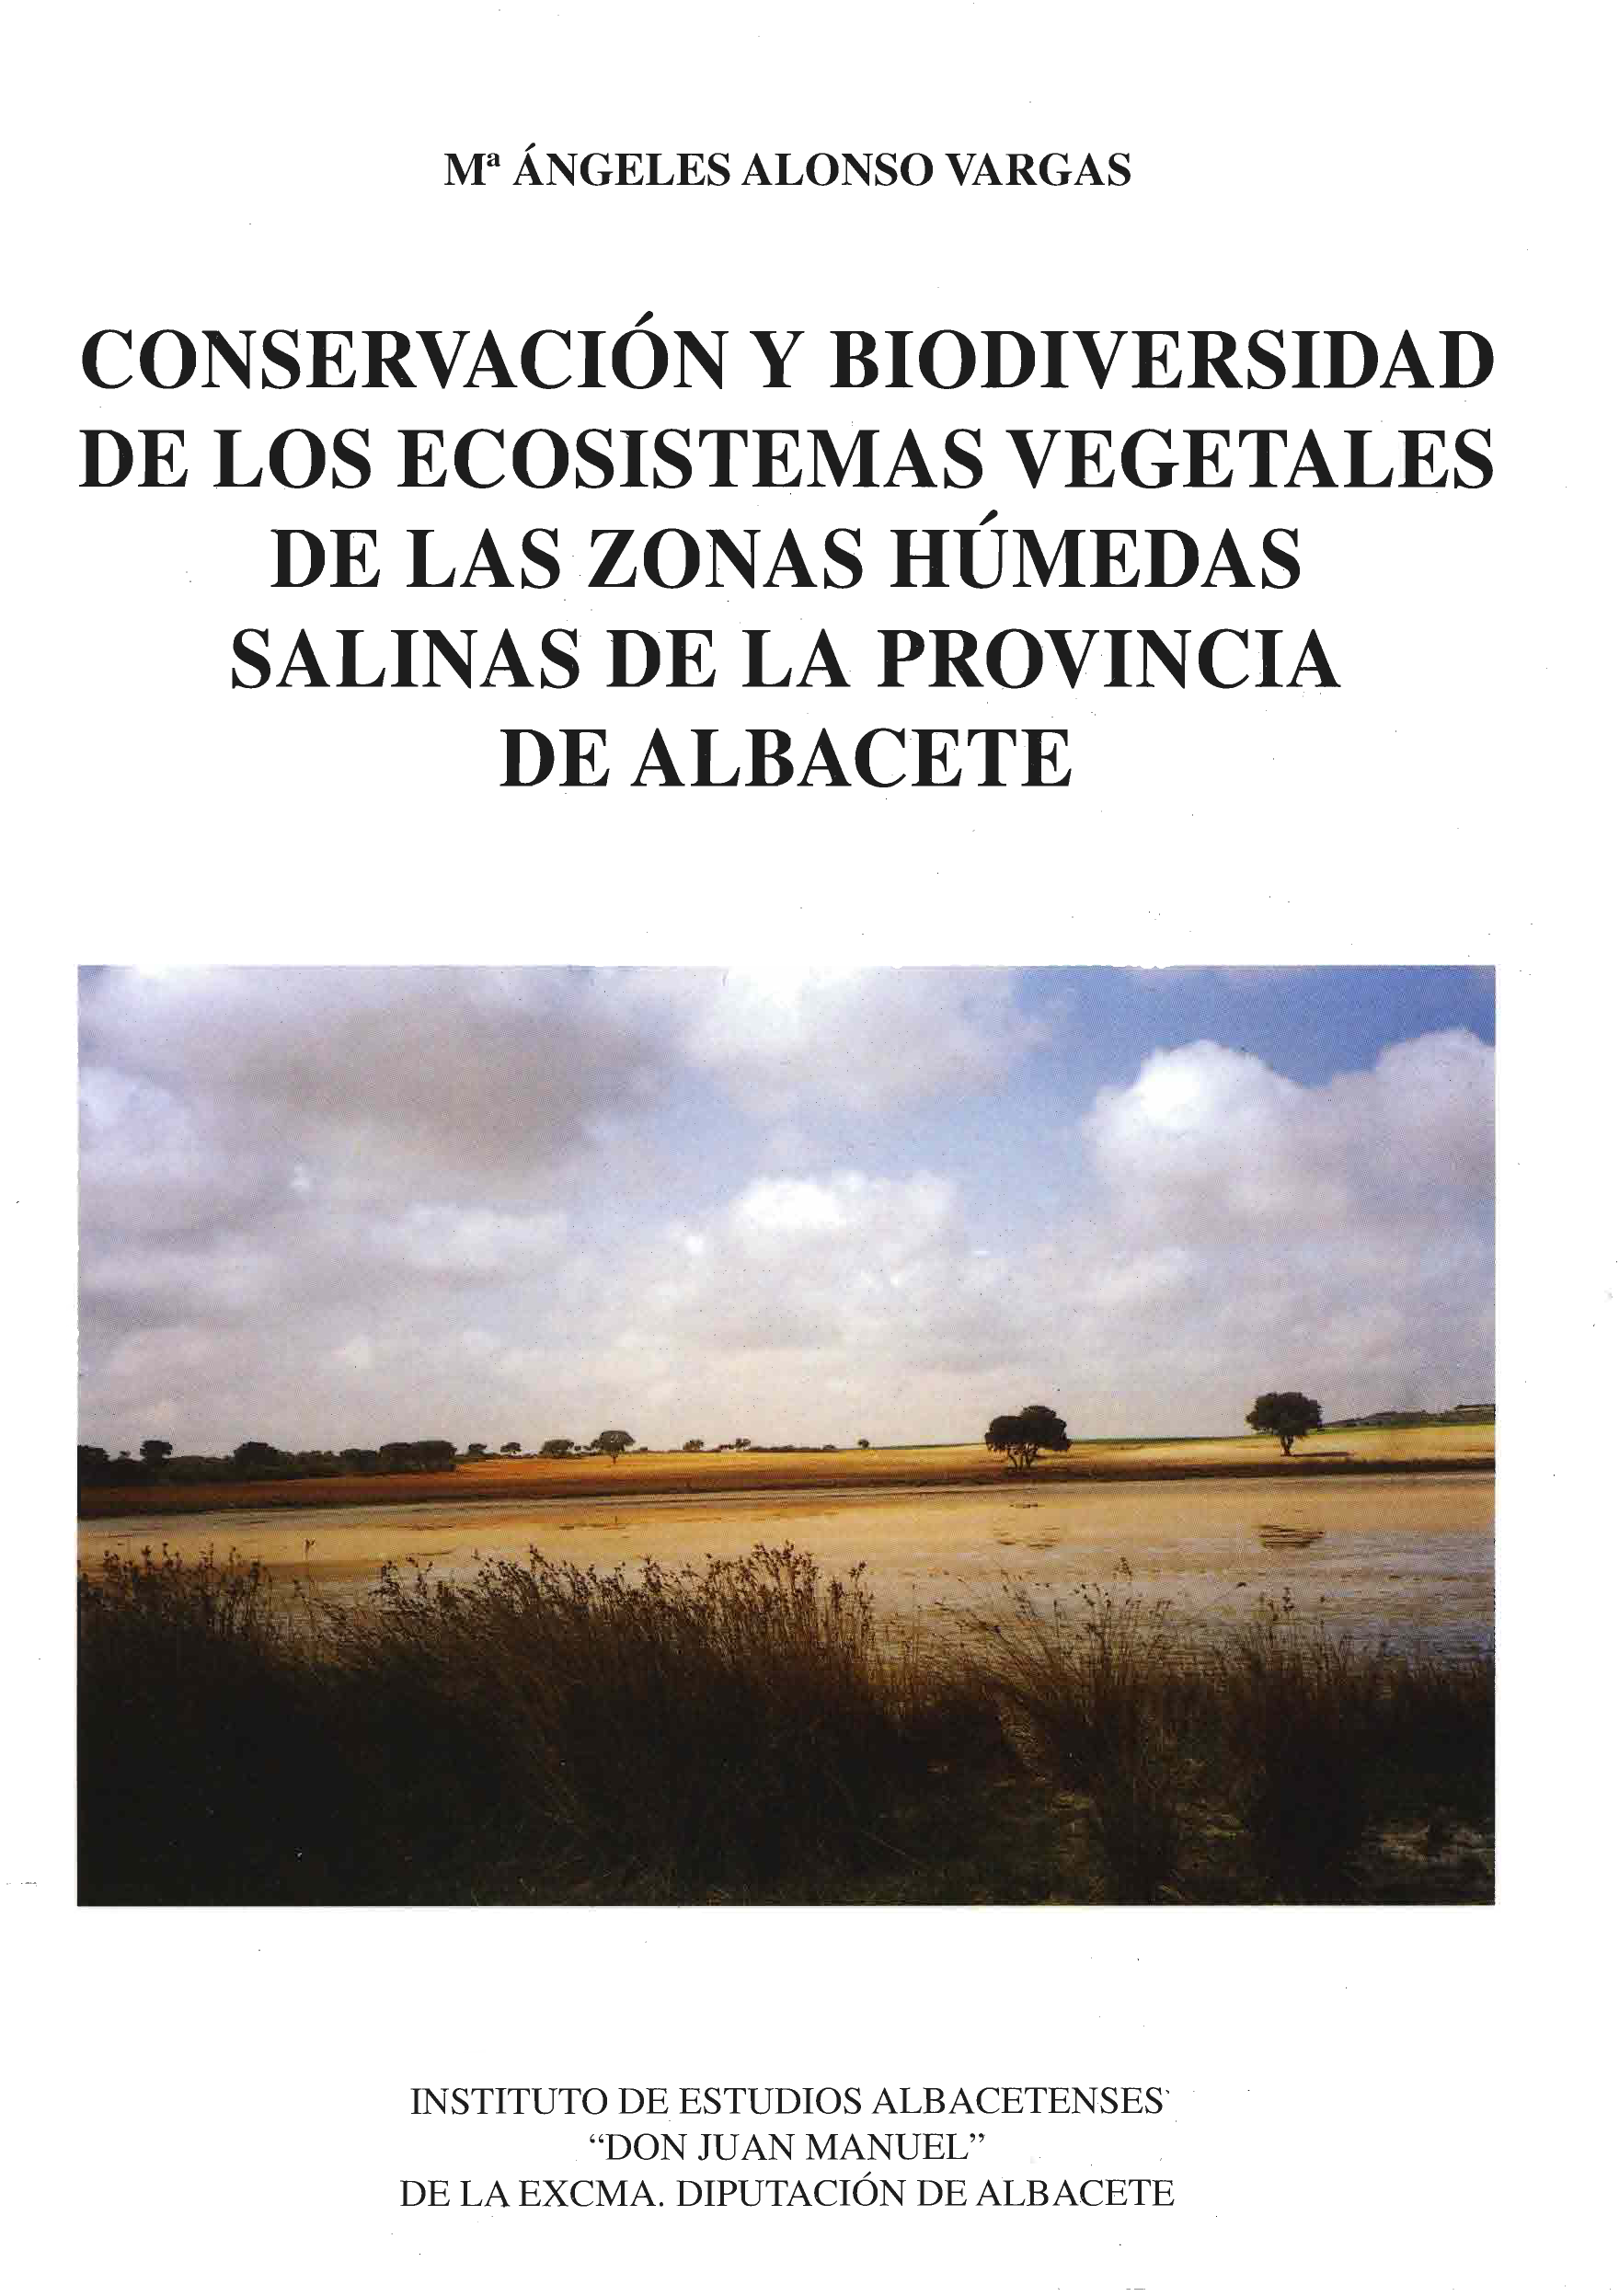 Imagen de portada del libro Conservación y biodiversidad de los ecosistemas vegetales de las zonas húmedas salinas de la provincia de Albacete